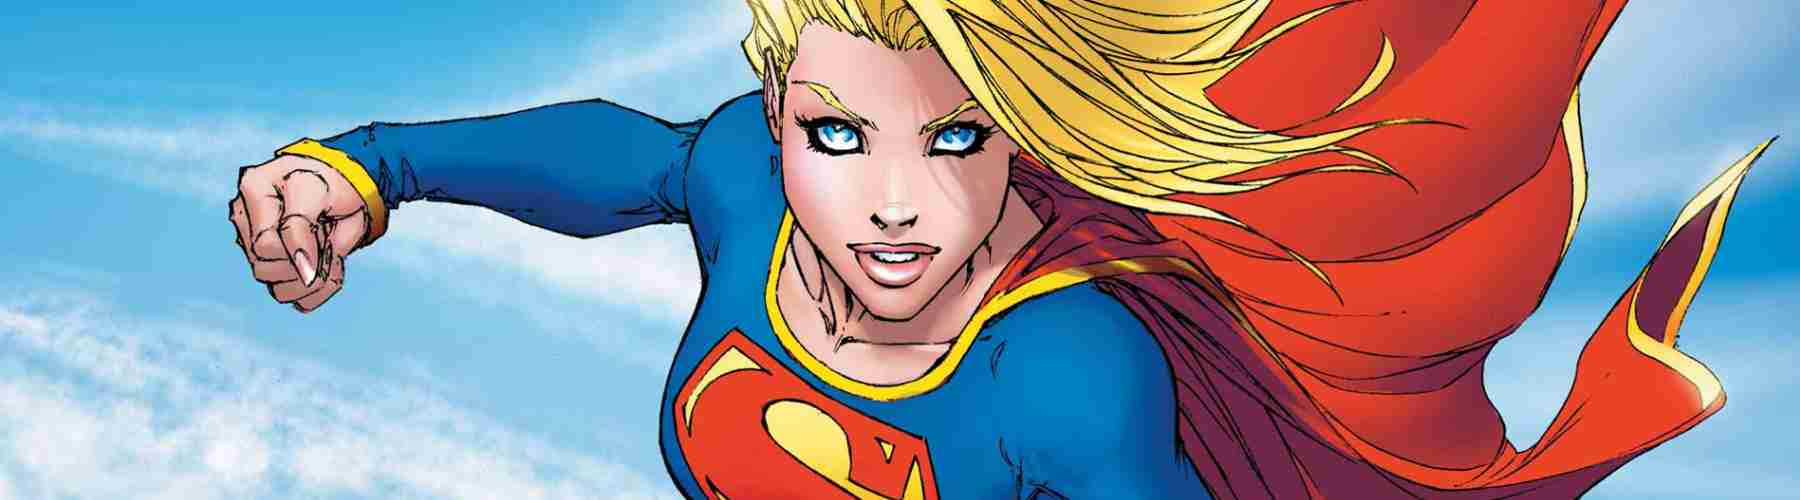 Supergirl Graphic Novels